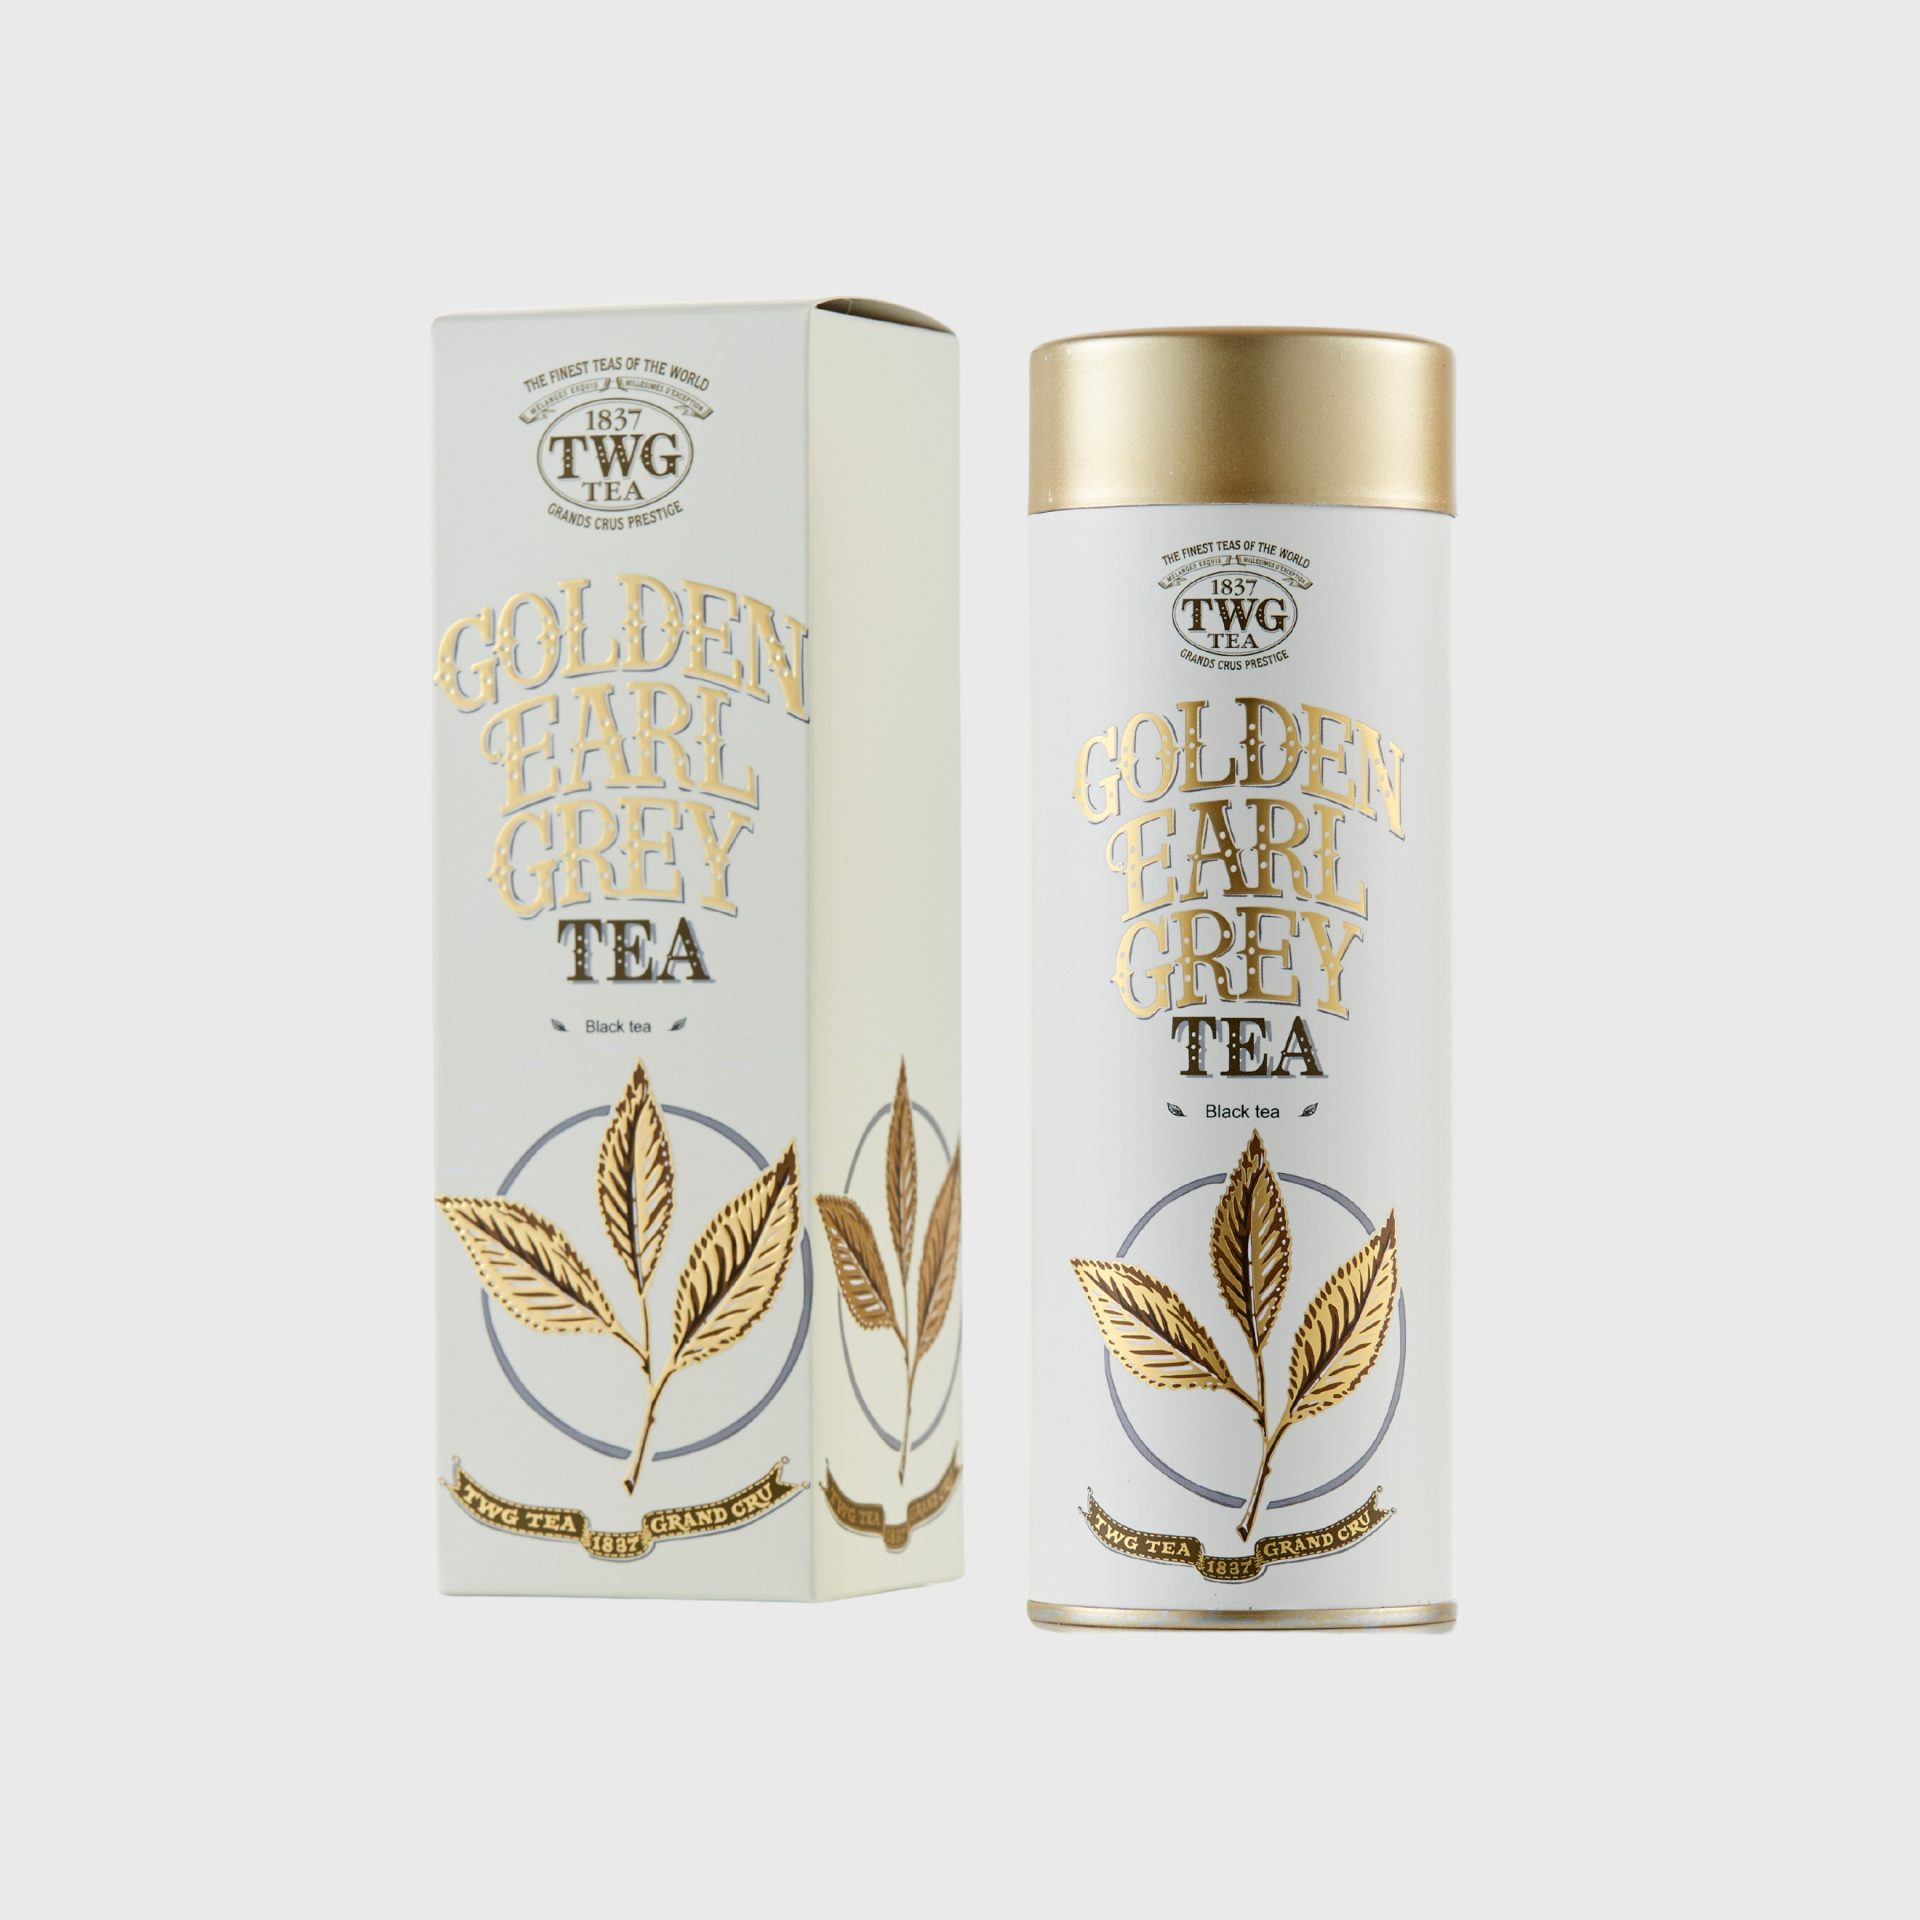 TWG Tea corporate gifts Singapore - Golden Earl Grey Tea